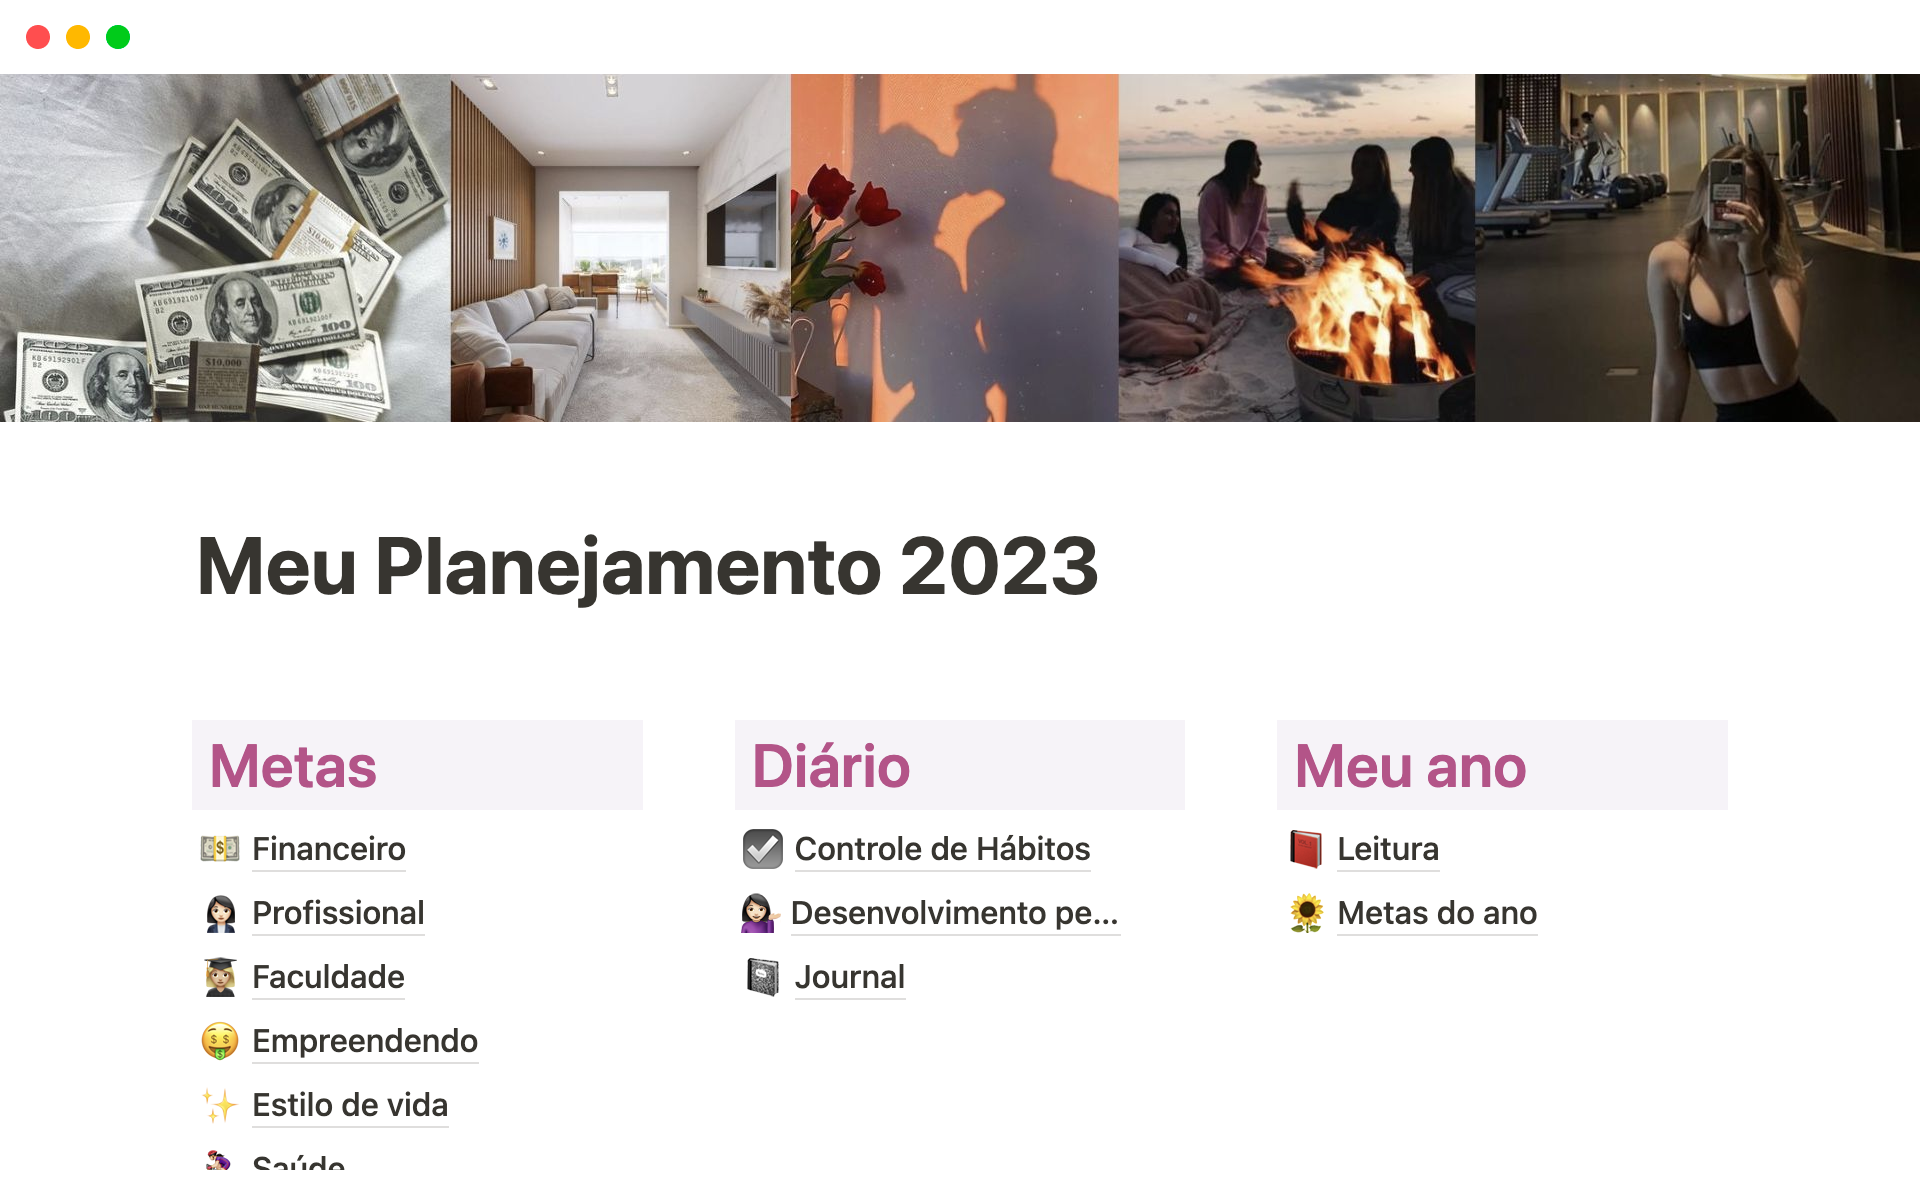 A template preview for Meu Planejamento 2023